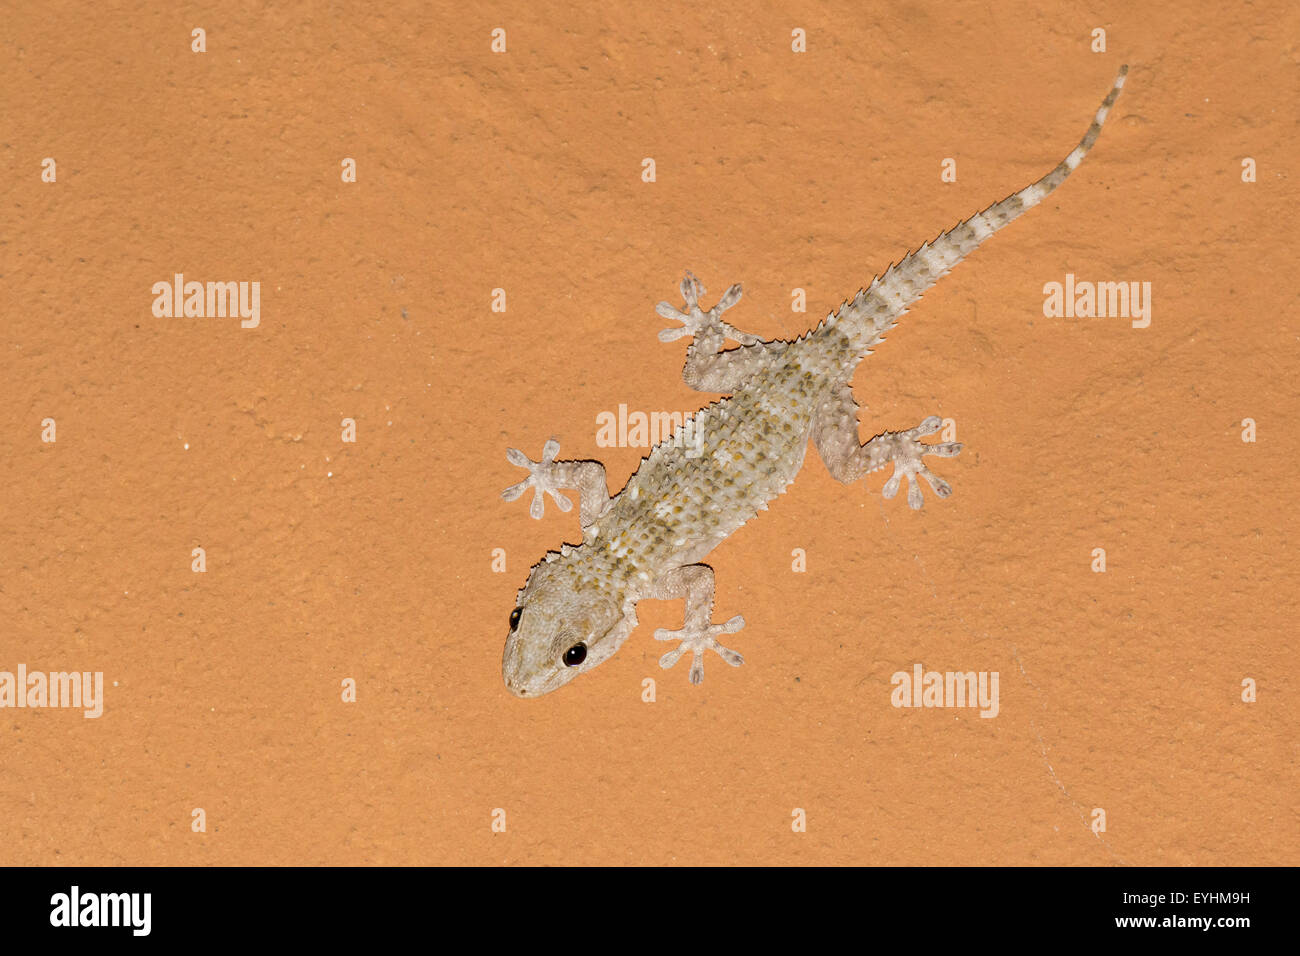 Tarentola Mauritanica, mediterrane Gecko warten auf Mücken an einer  orangefarbenen Decke Stockfotografie - Alamy